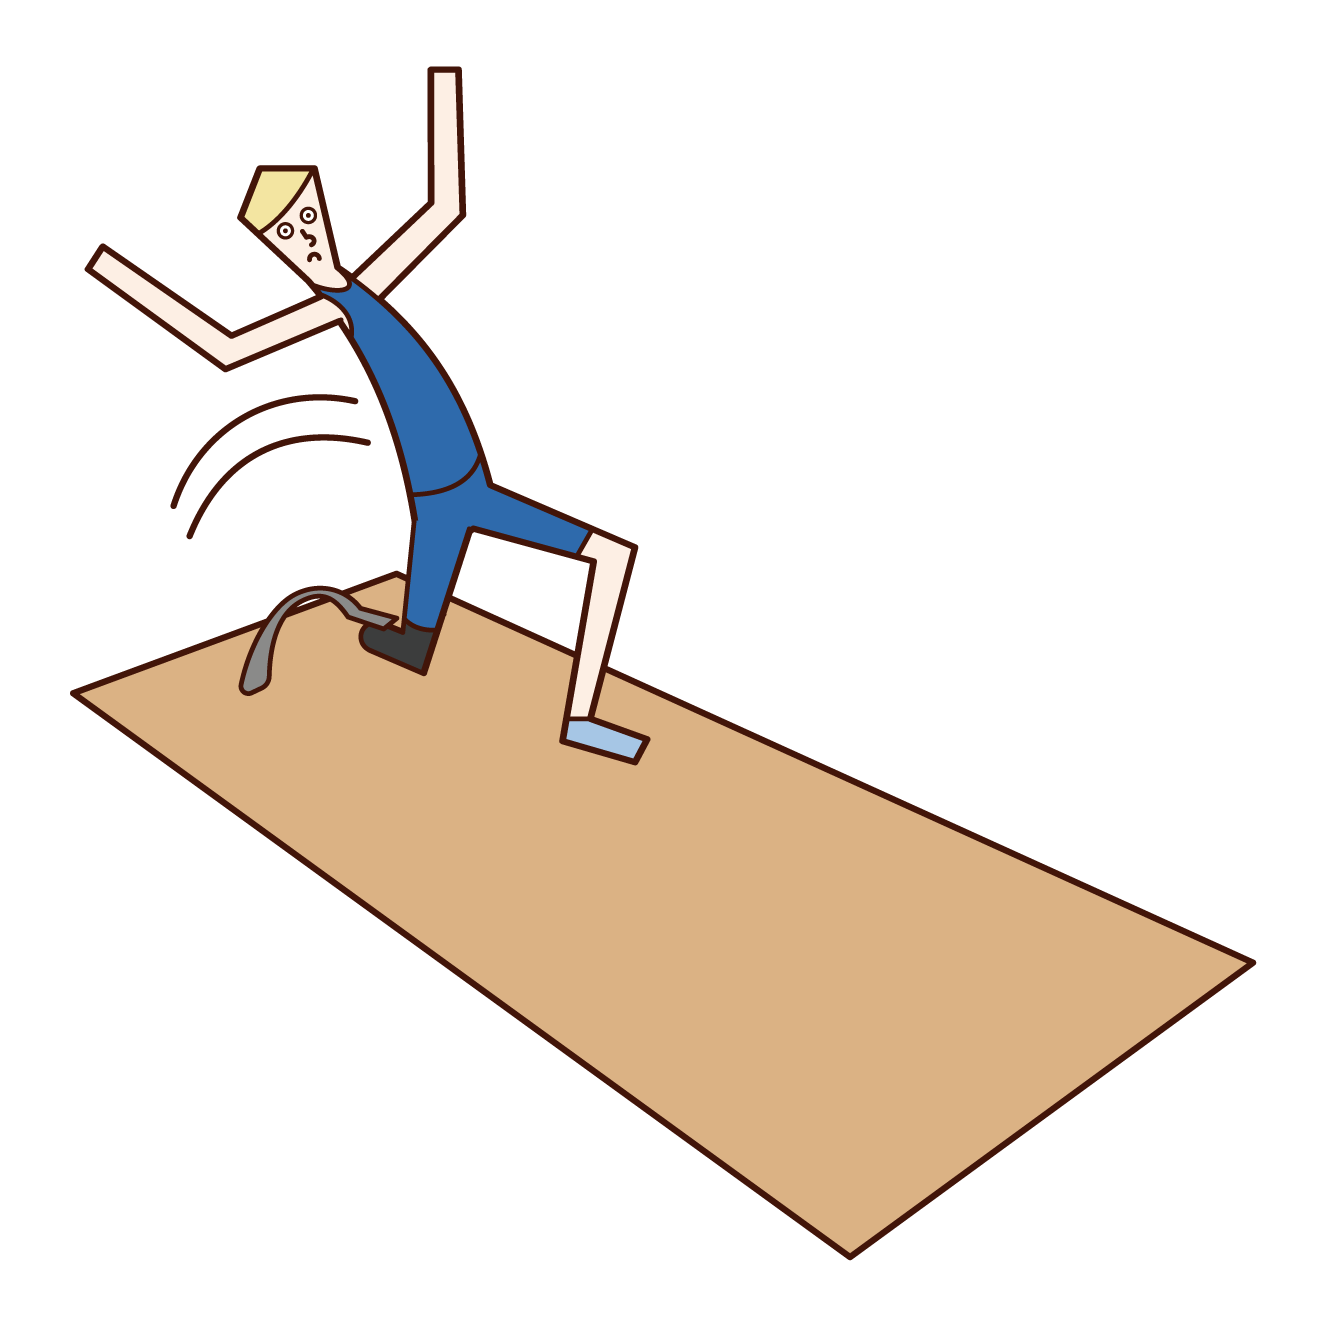 義足を付けた走り幅跳びの選手（男性）のイラスト